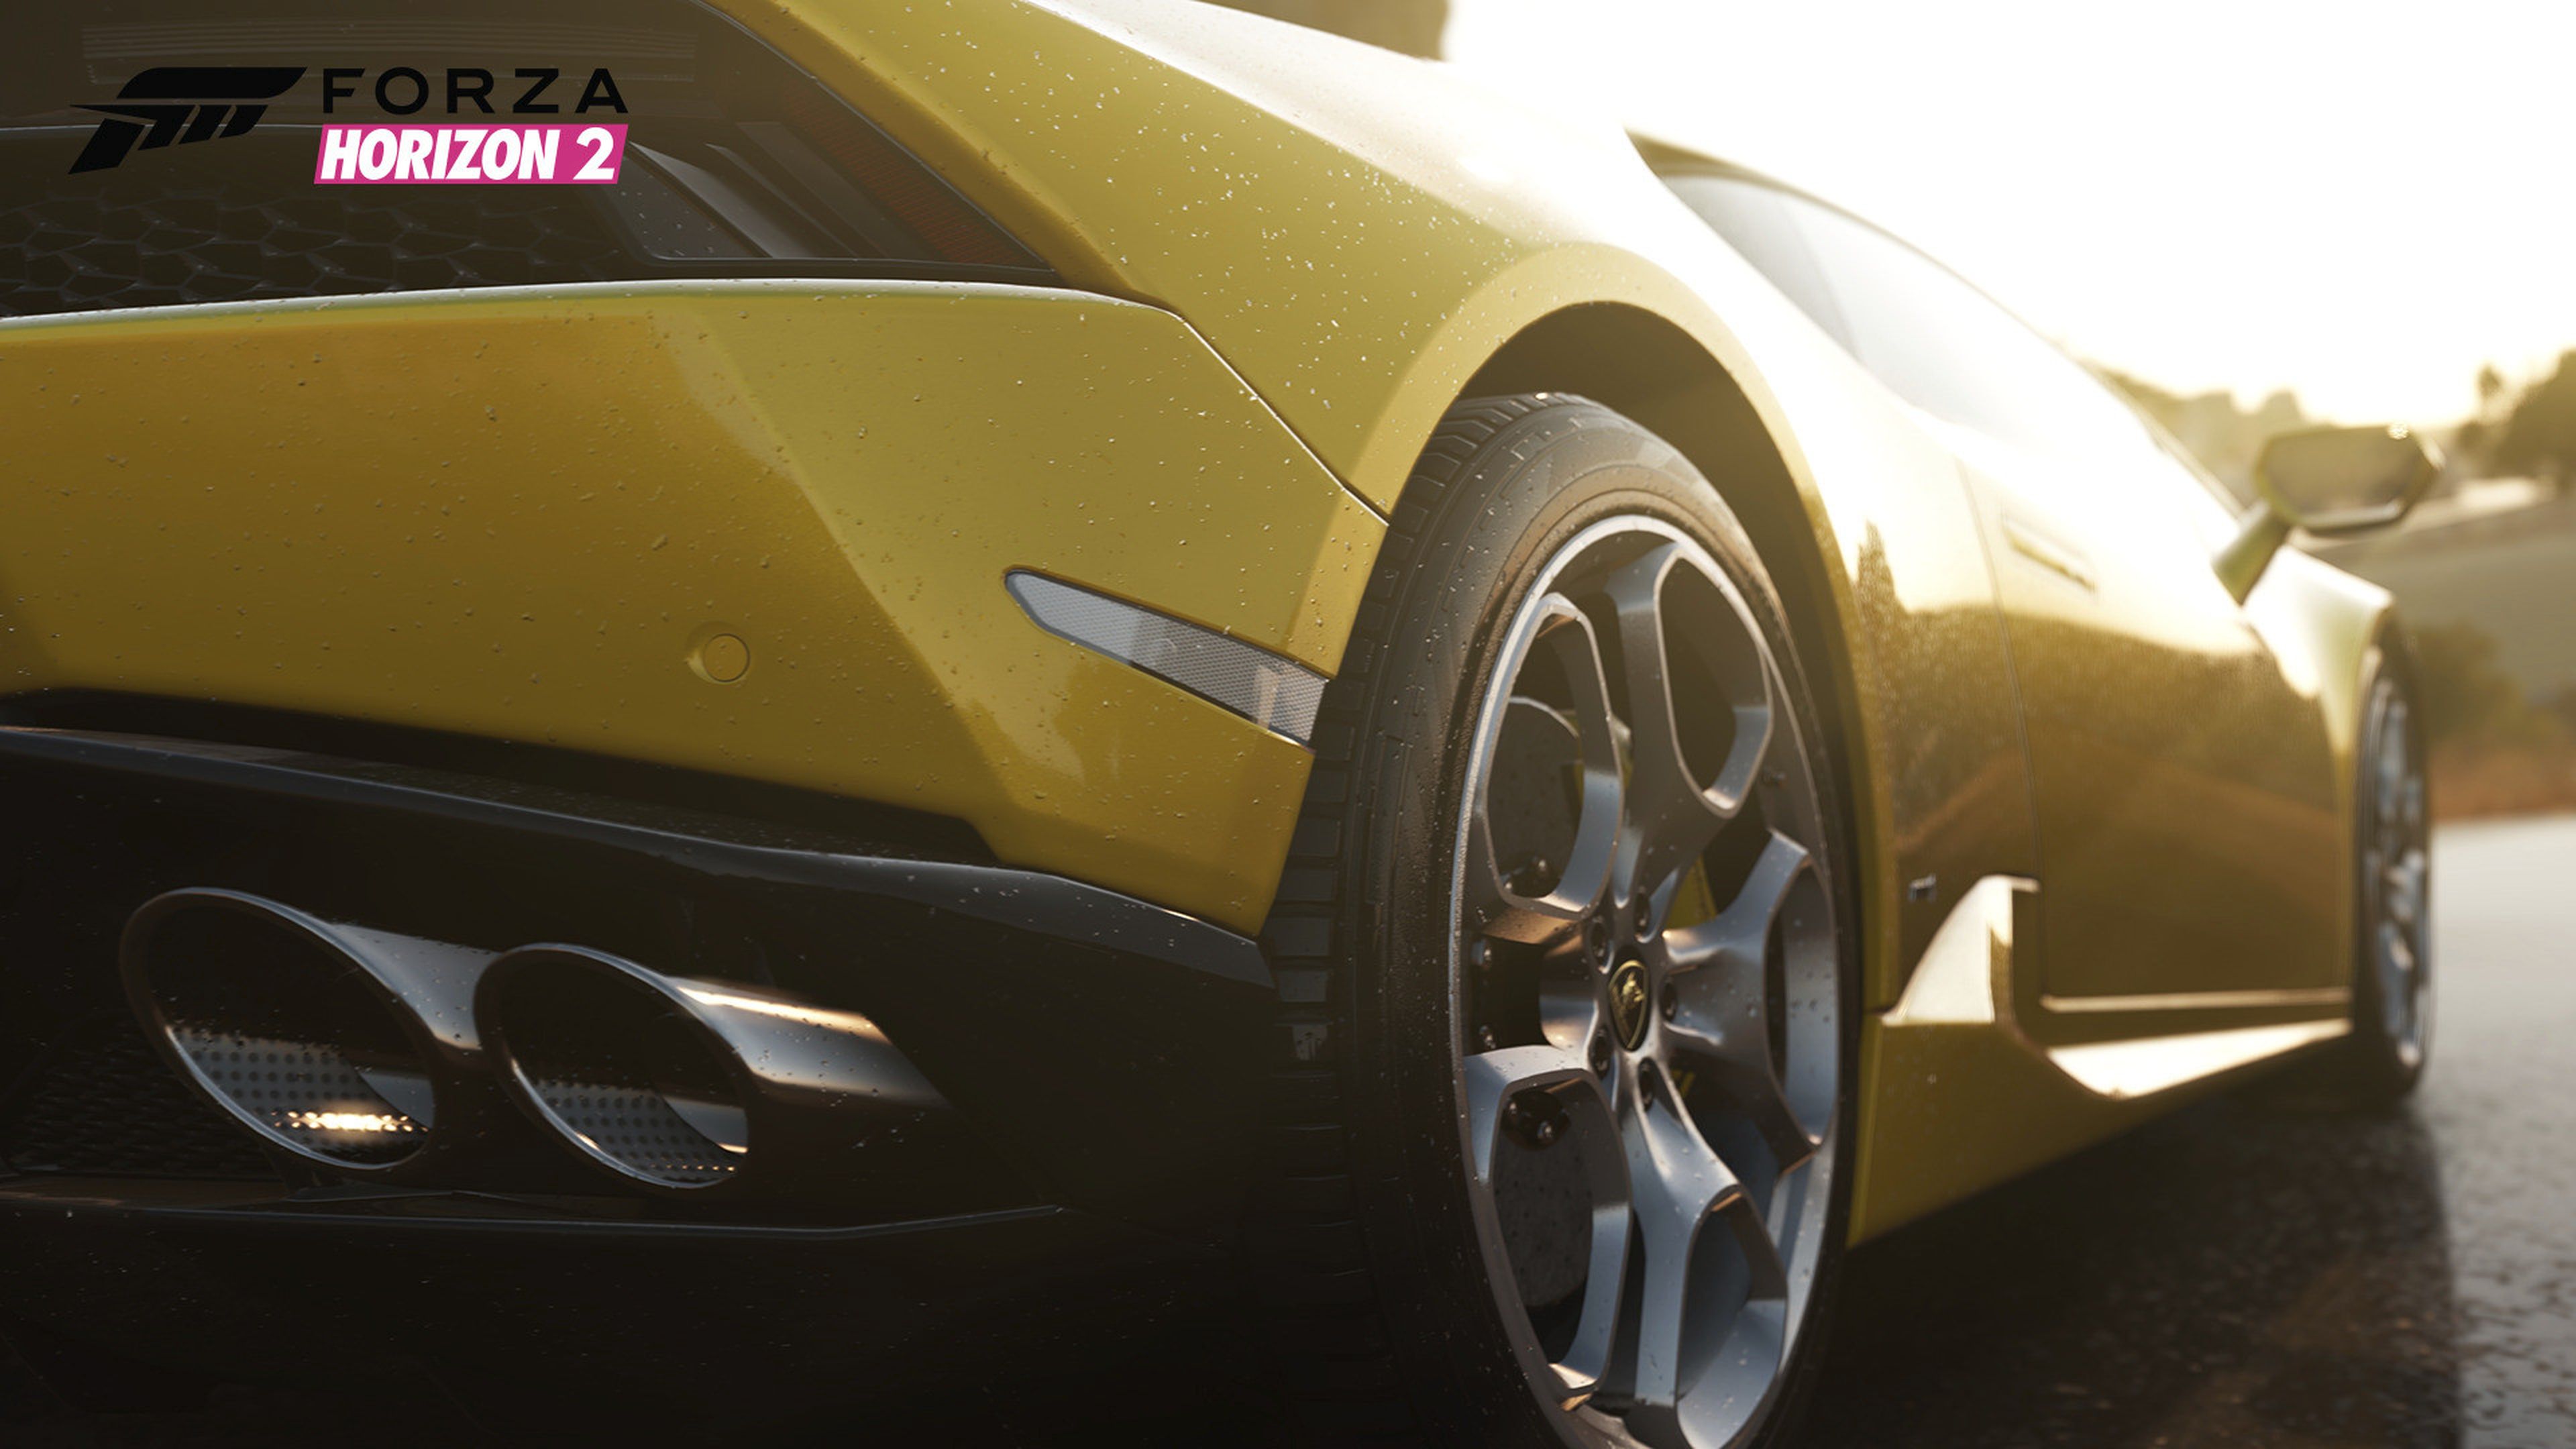 Imágenes de Forza Horizon 2 en Xbox One